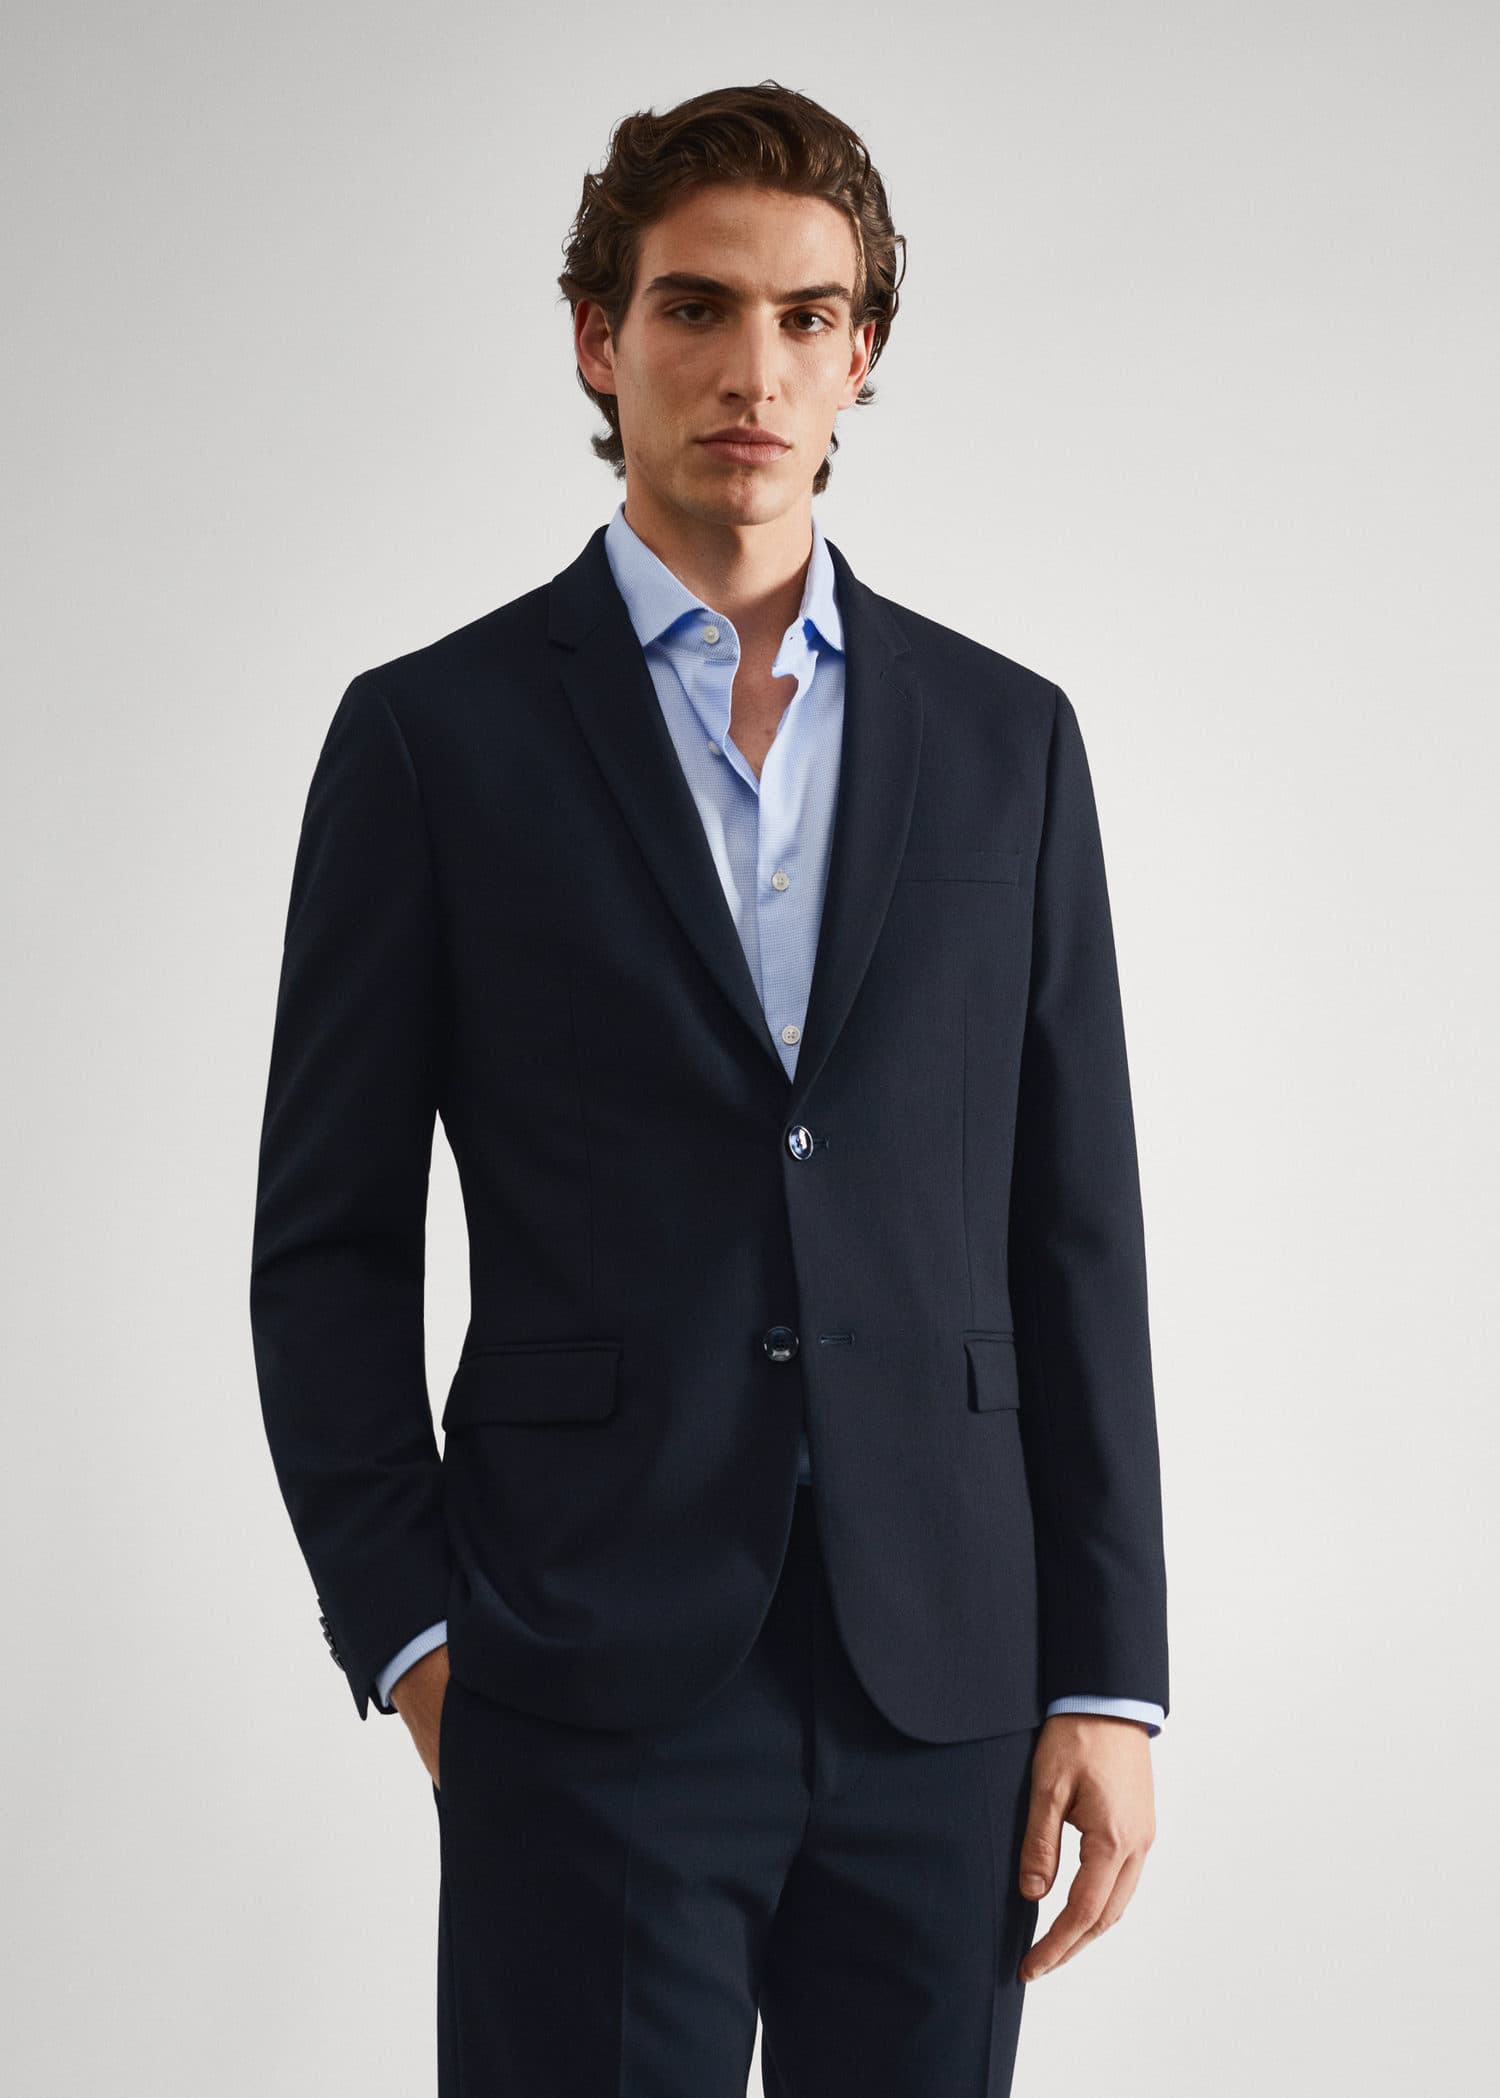 Super slim-fit suit jacket - Medium plane